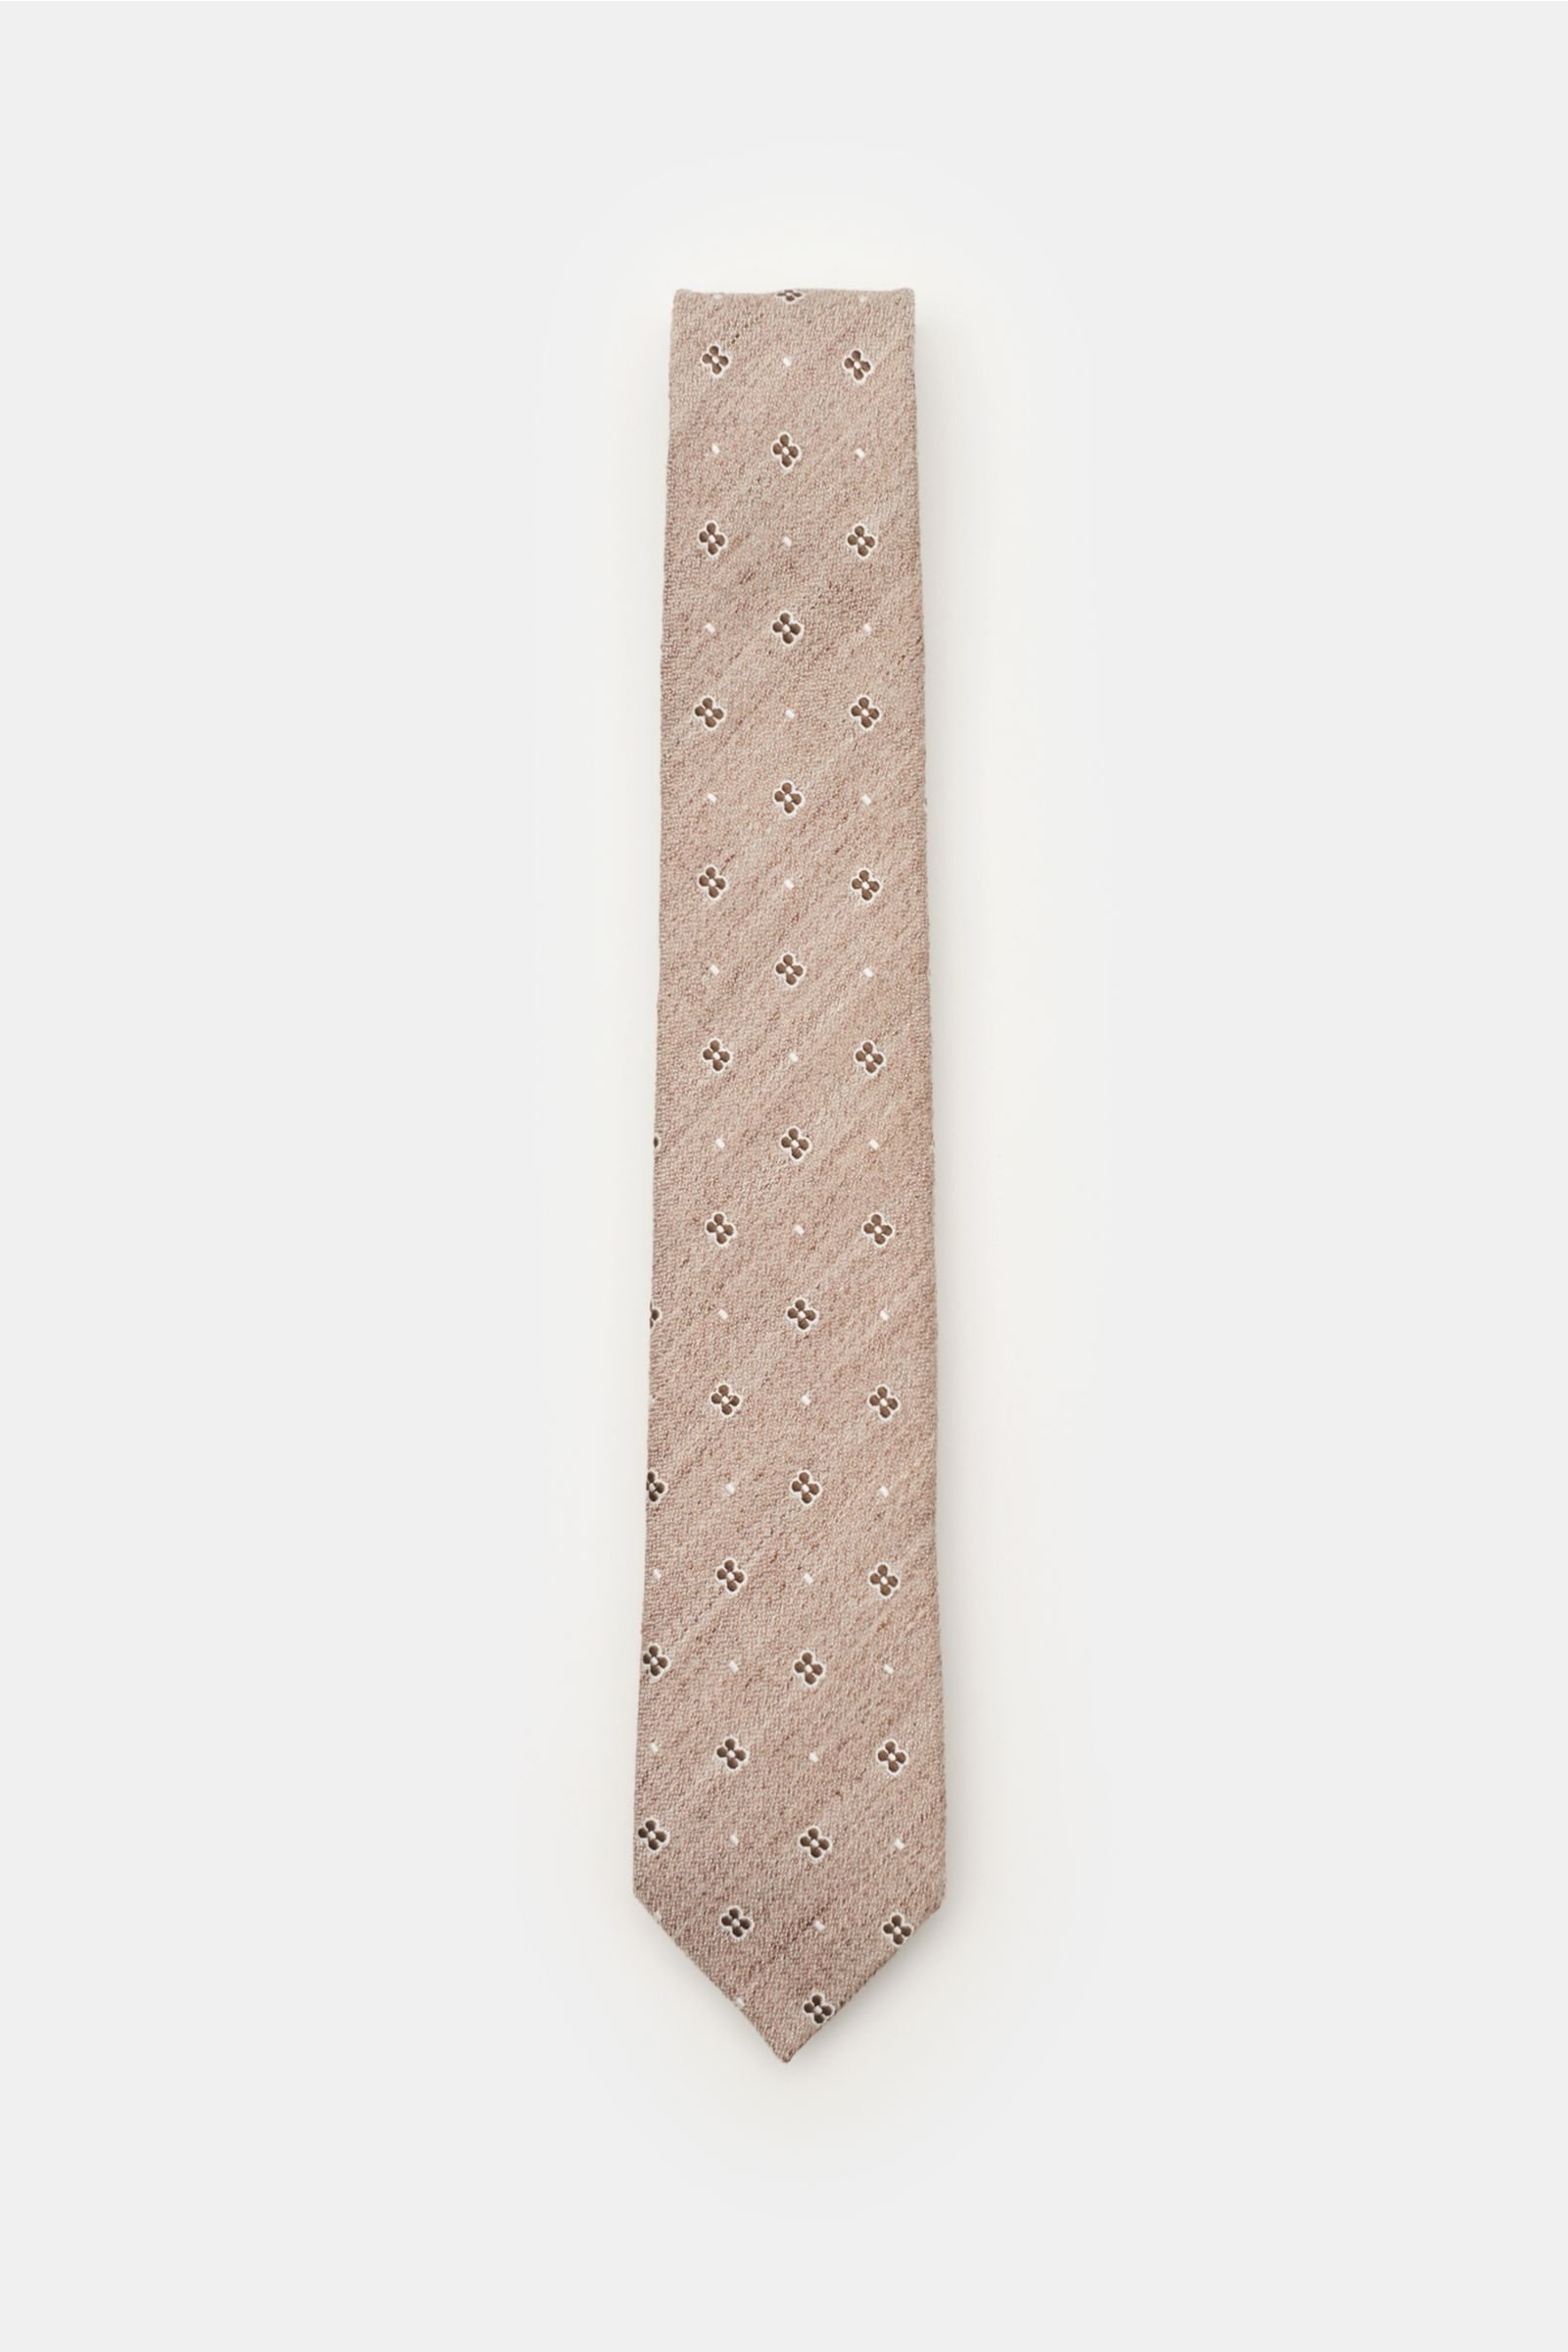 Tie beige/brown patterned